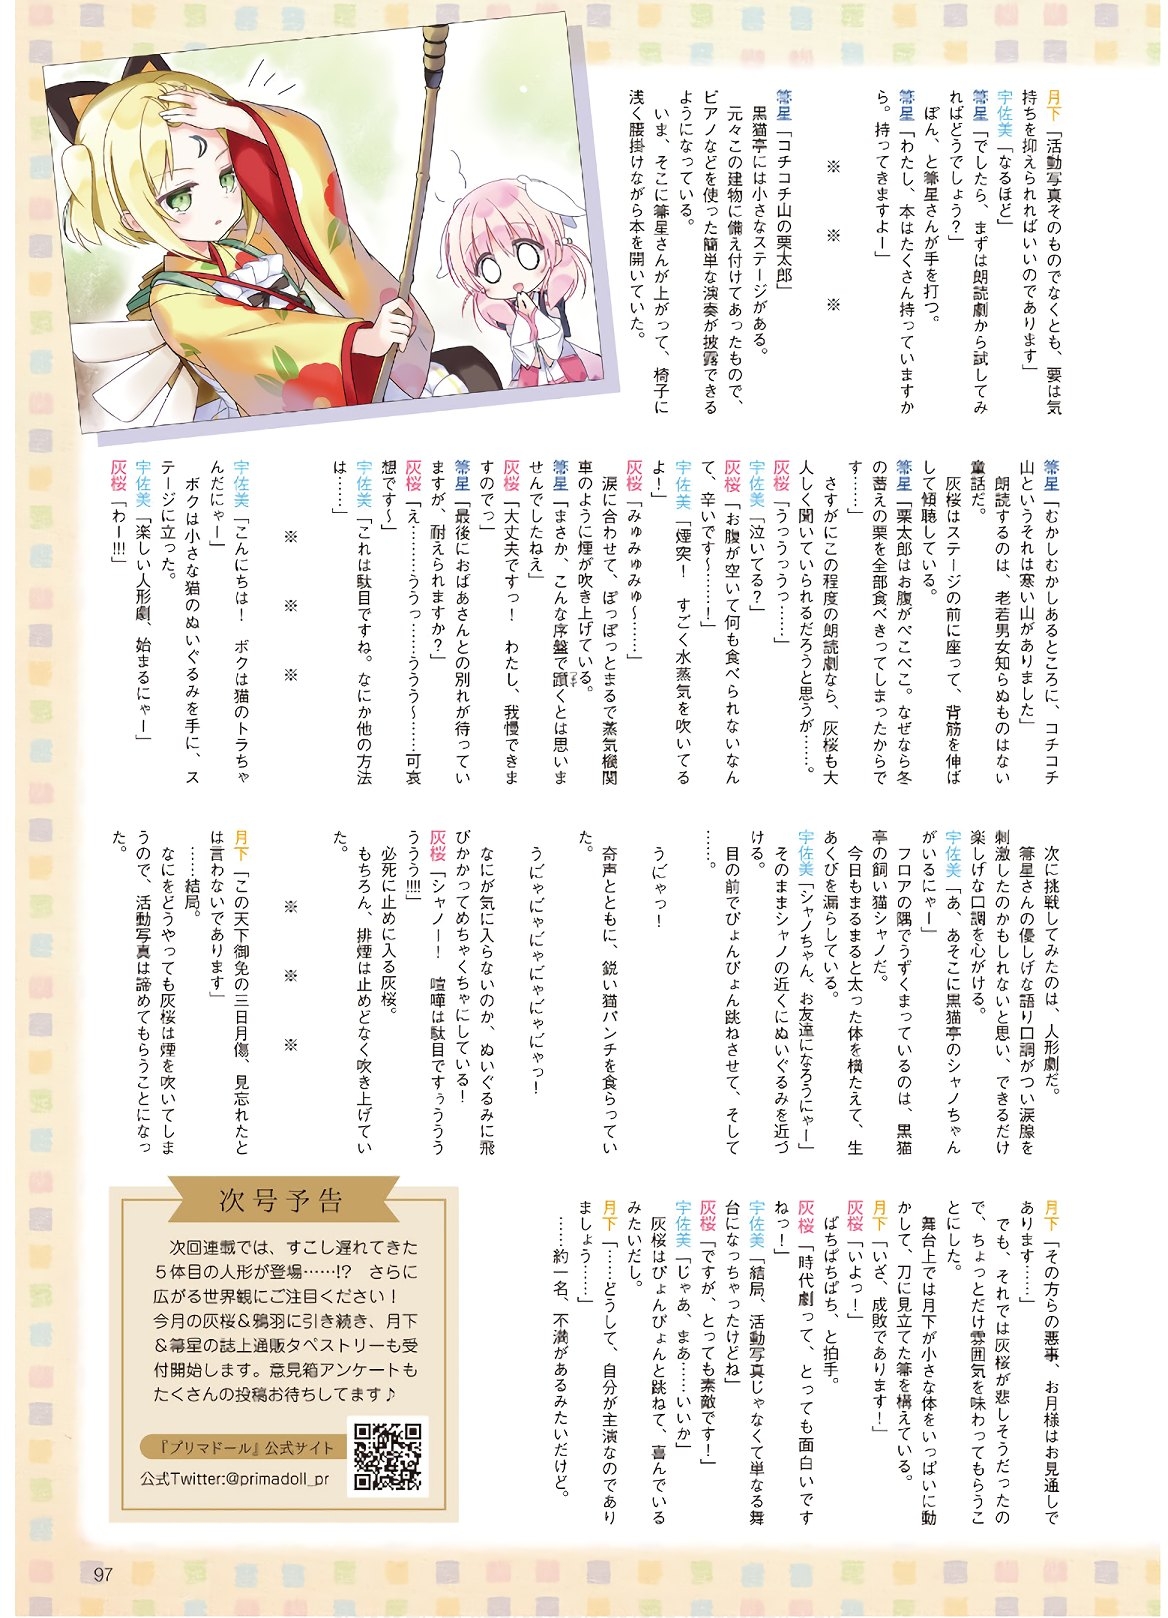 Dengeki G's Magazine #286 - May 2021 94